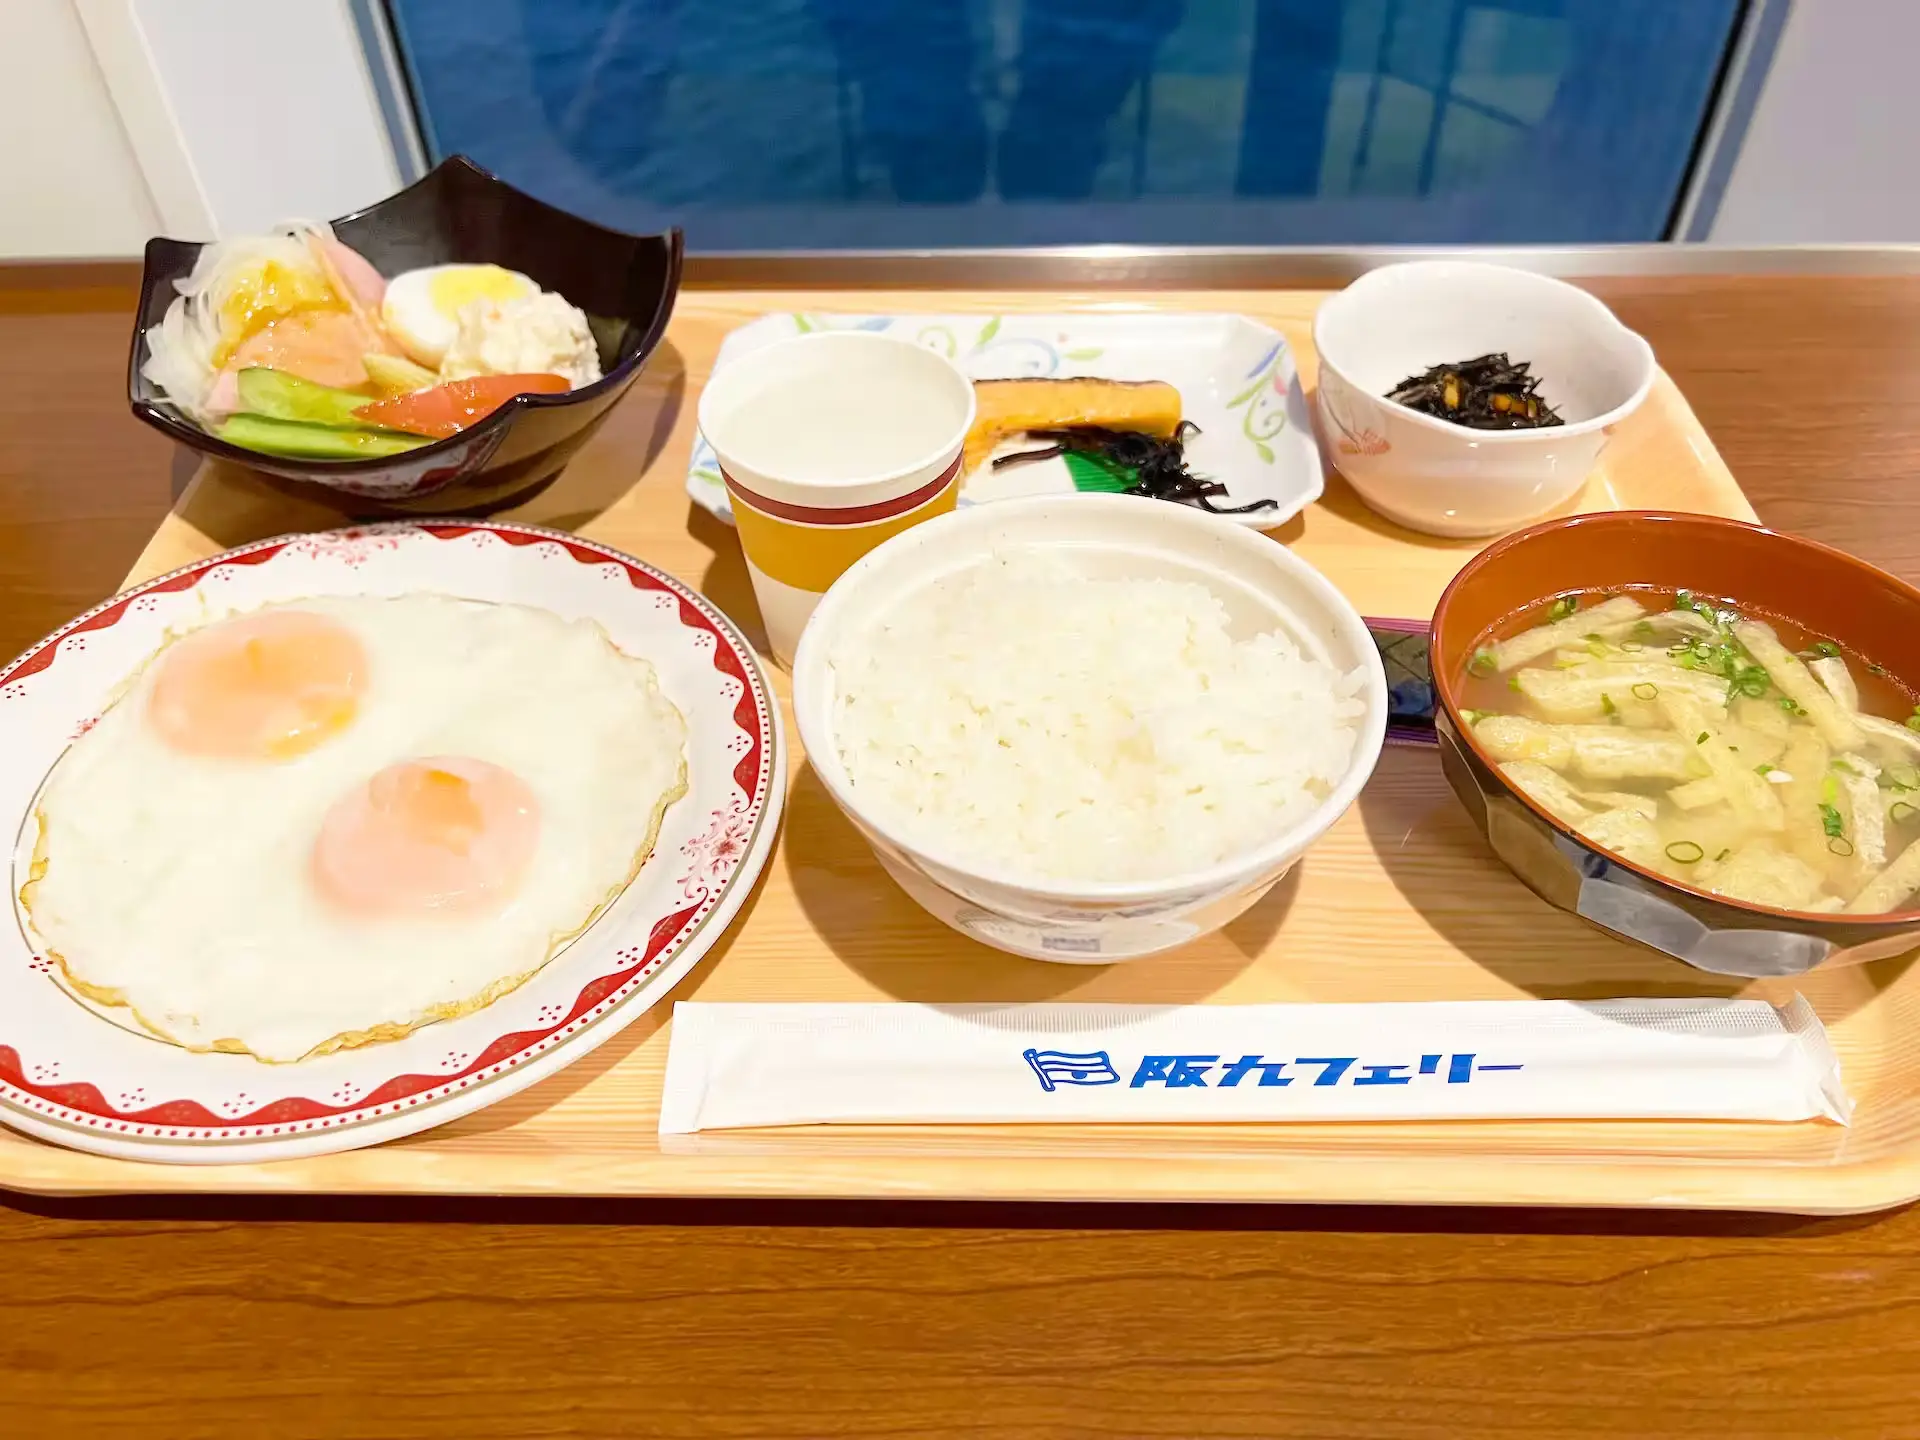 阪九フェリーやまと船内レストランの朝食が載ったプレート